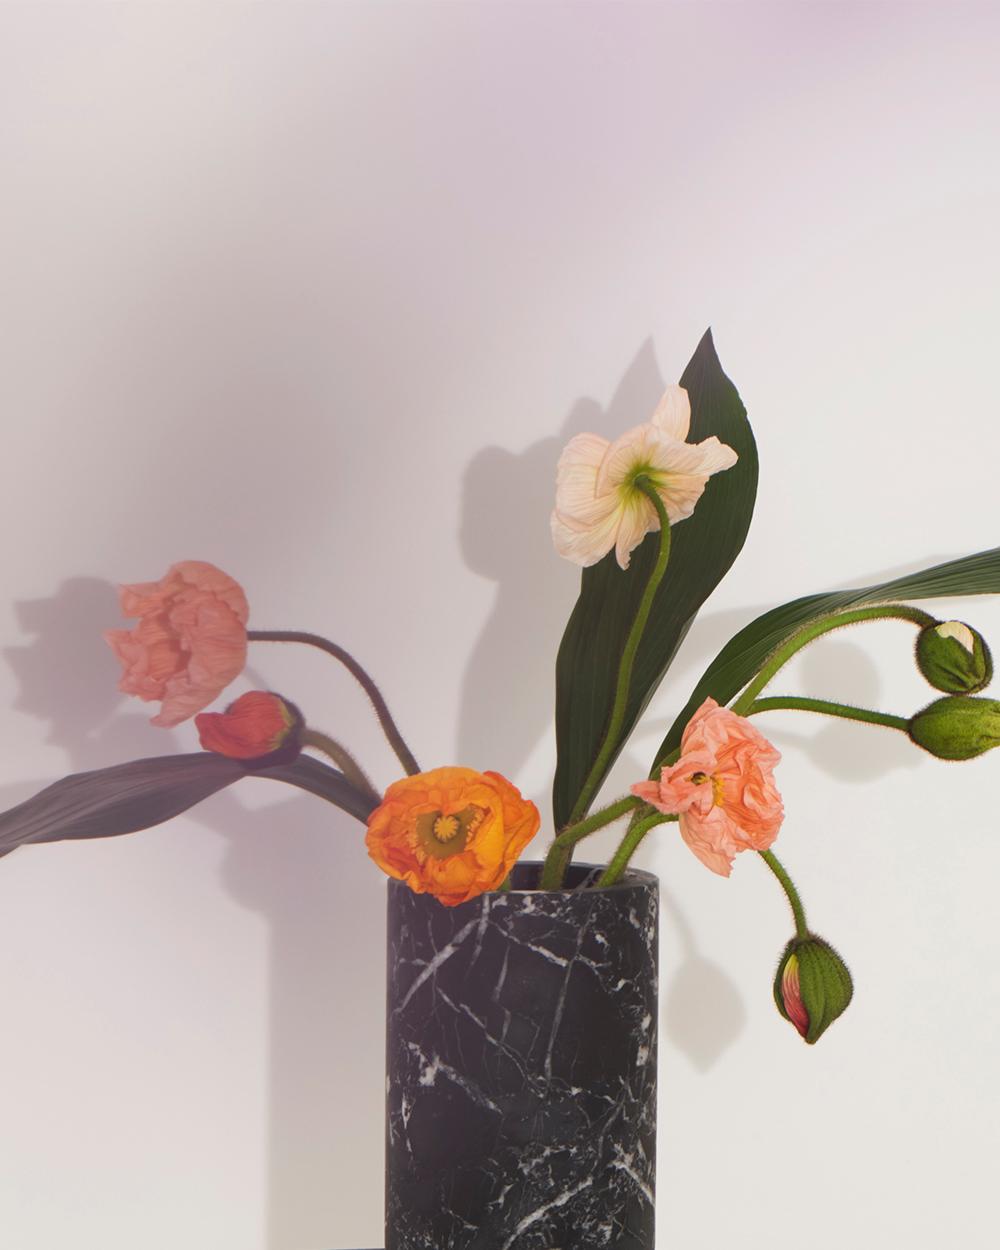 Blumenvase aus schwarzem Marquinia-Marmor, entworfen von Karen Chekerdjian, hergestellt in Italien
Teil des Zubehörs der Inside Out Collection'S - Vasen, Kerzen, Schalen. Er kann zur individuellen Gestaltung des Esstisches Inside Out und der Konsole